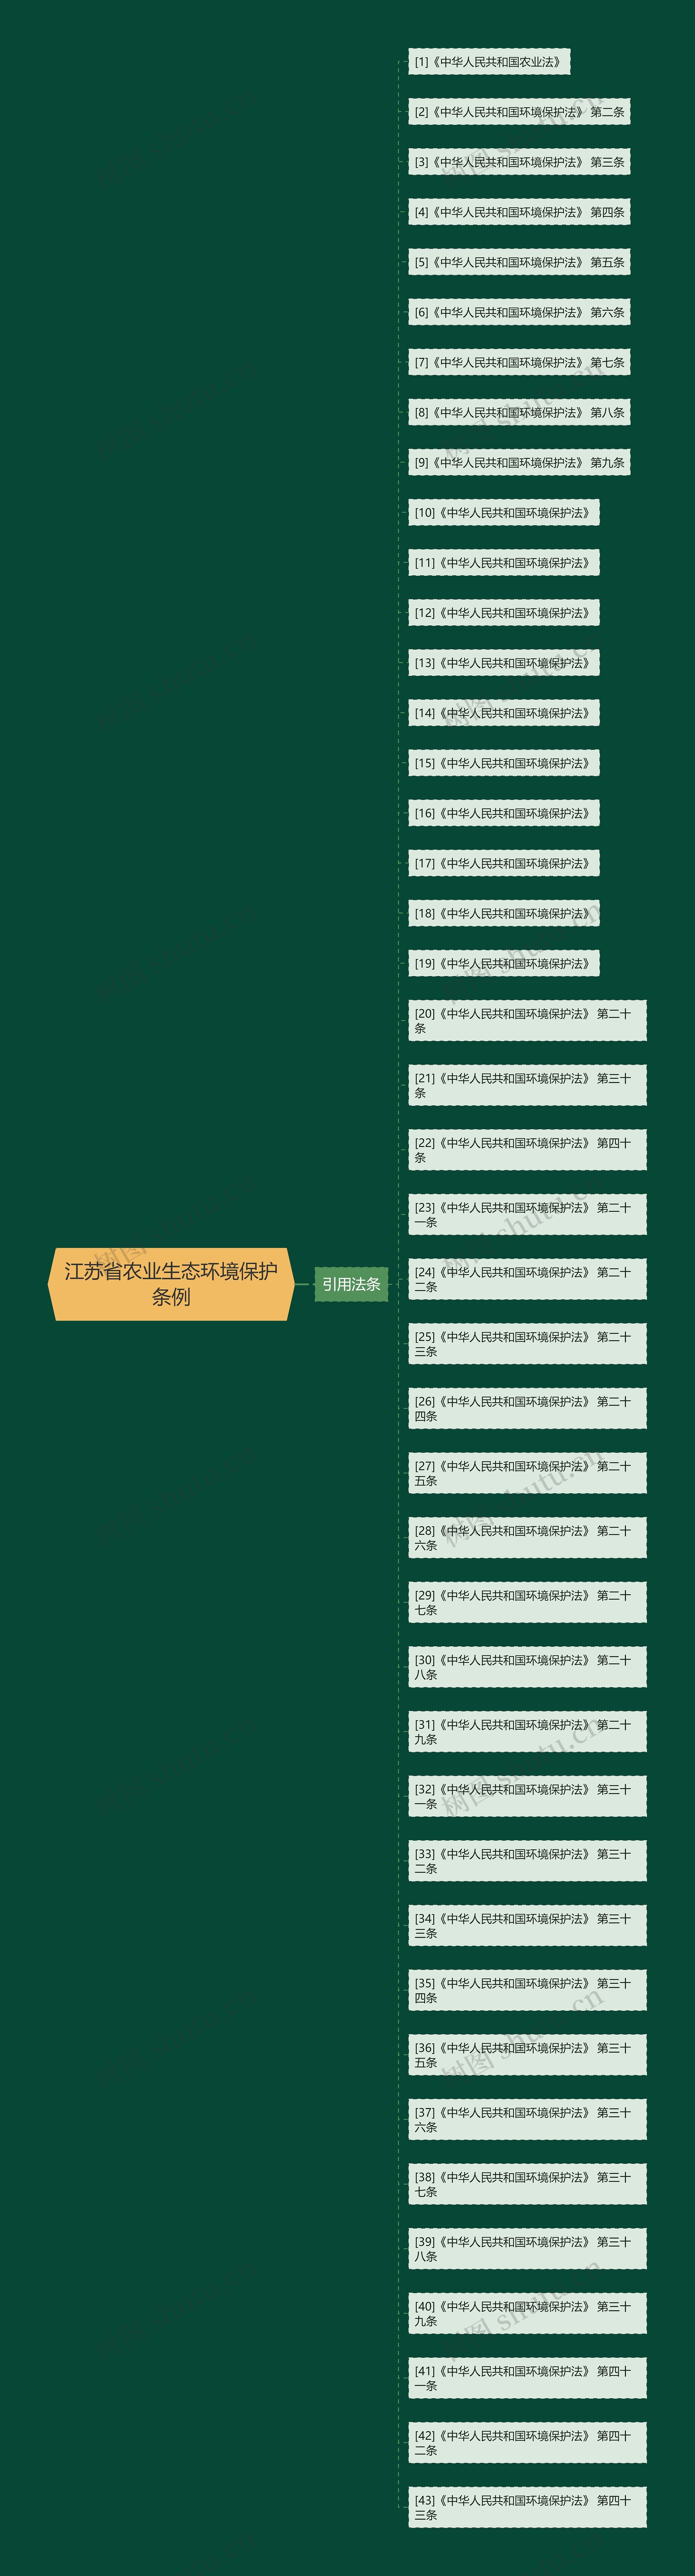 江苏省农业生态环境保护条例思维导图